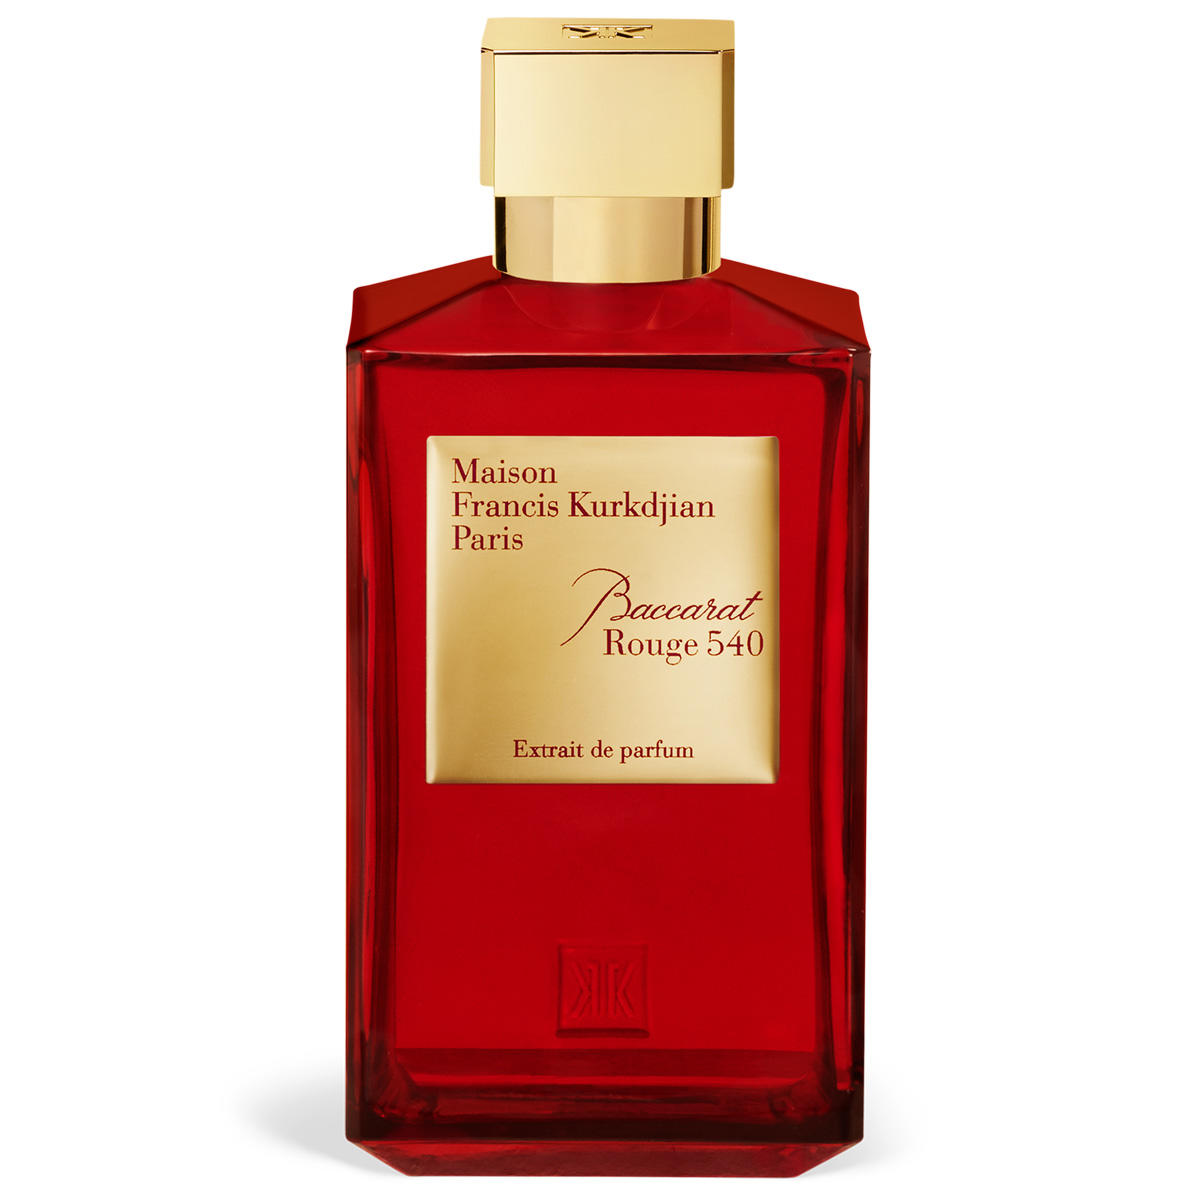 Maison Francis Kurkdjian Paris Baccarat Rouge 540 Extrait de Parfum 200 ml